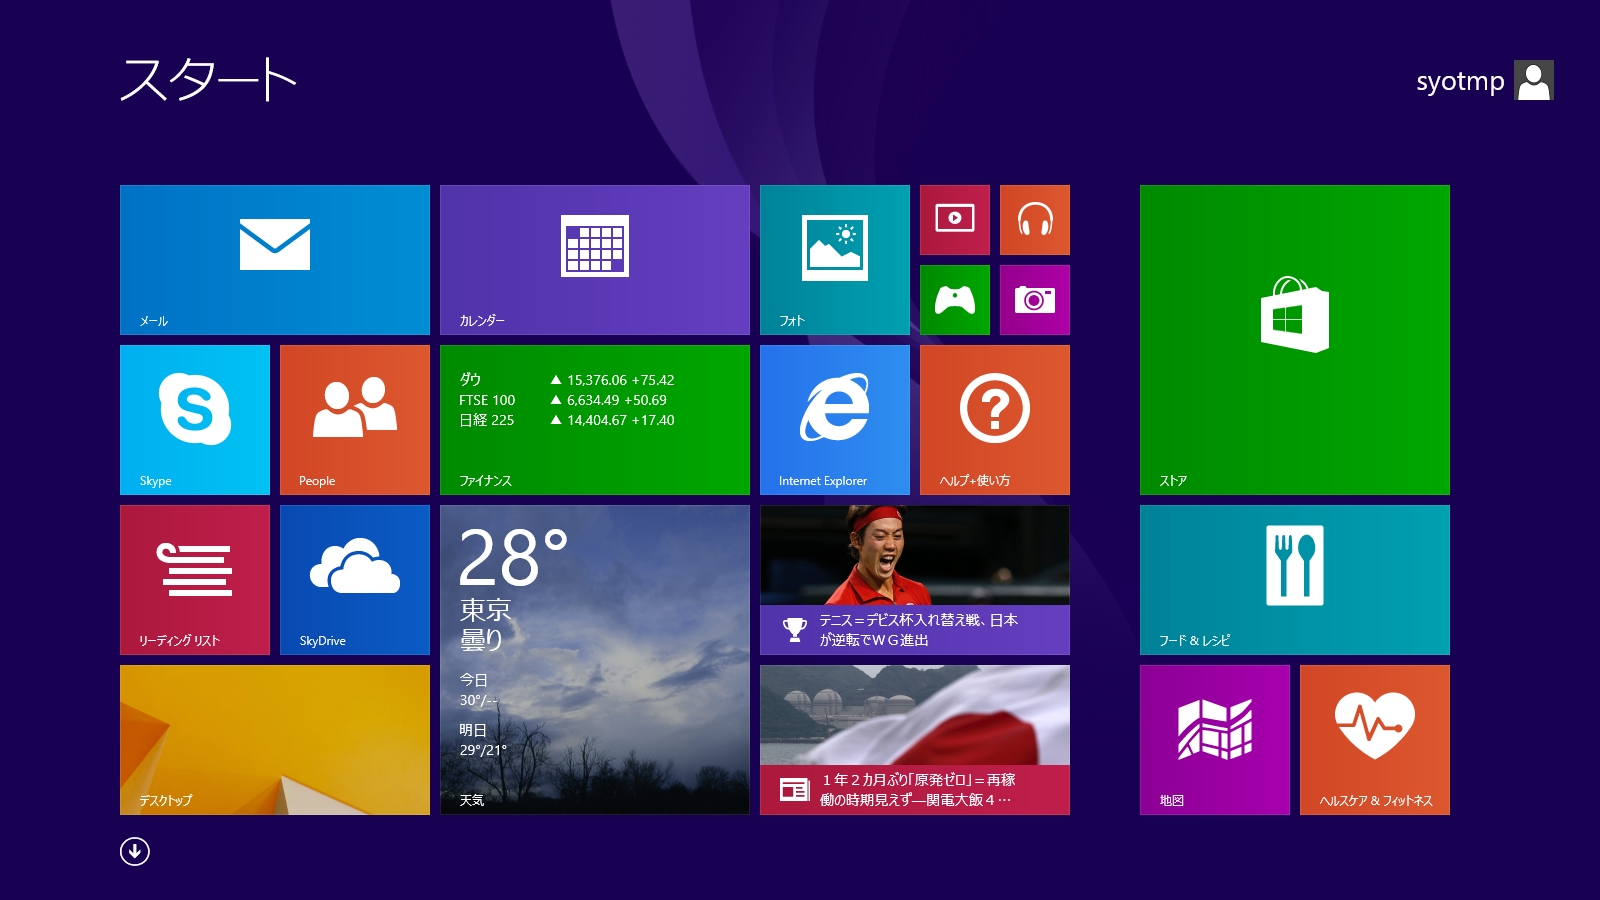 画像 Windows 8 1カウントダウン Windows 8 1 Rtmを試す 7 7 Pc Watch